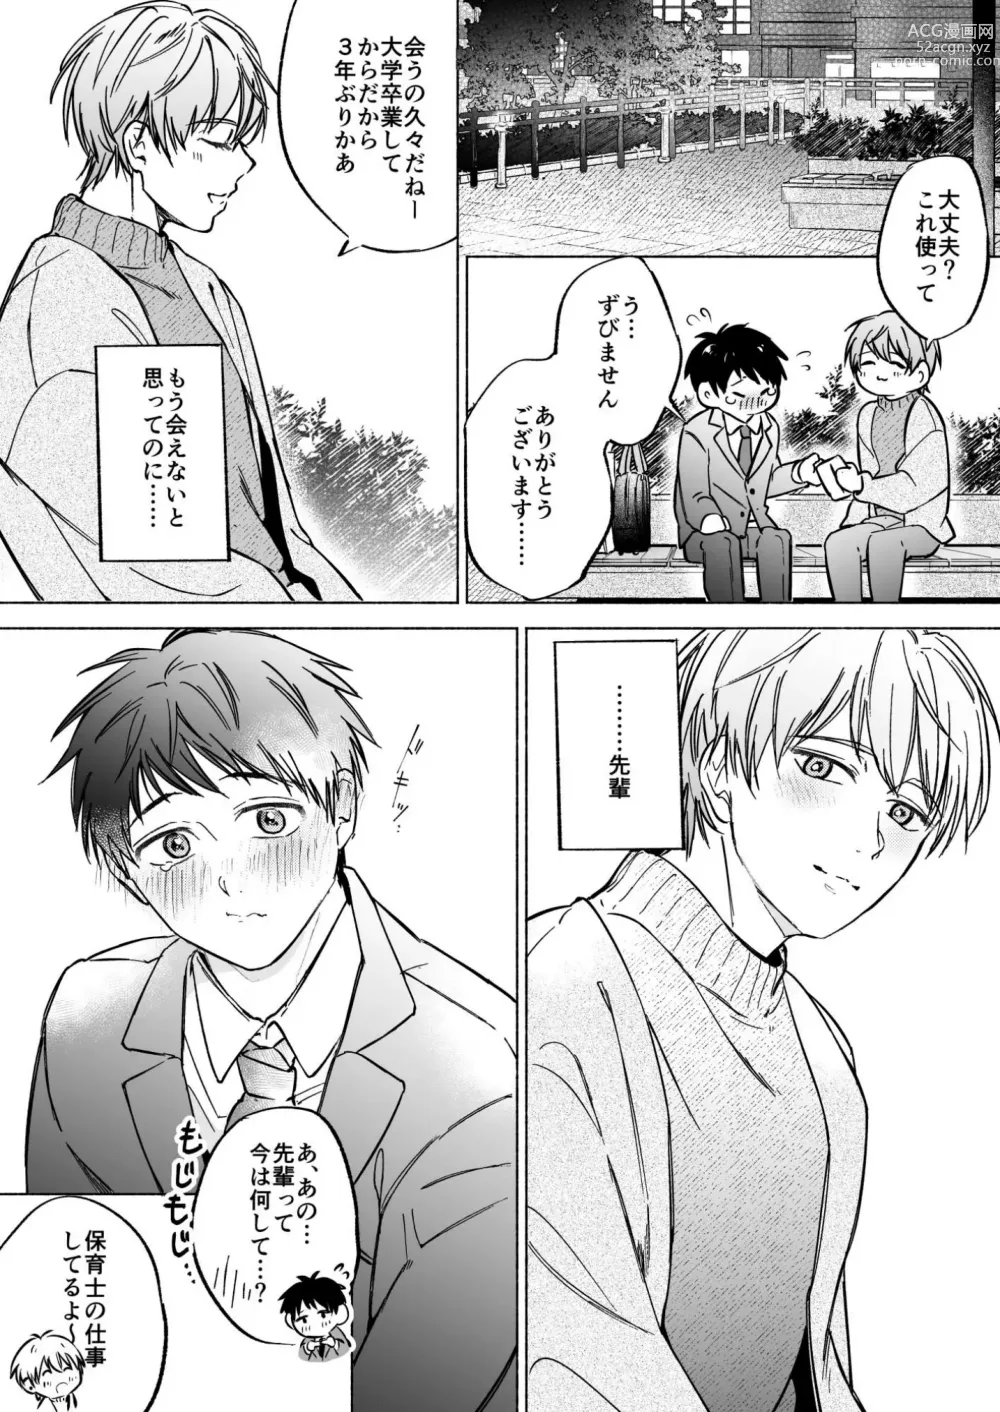 Page 6 of doujinshi Shachiku Salaryman toro ama yoshiyoshi Ecchi